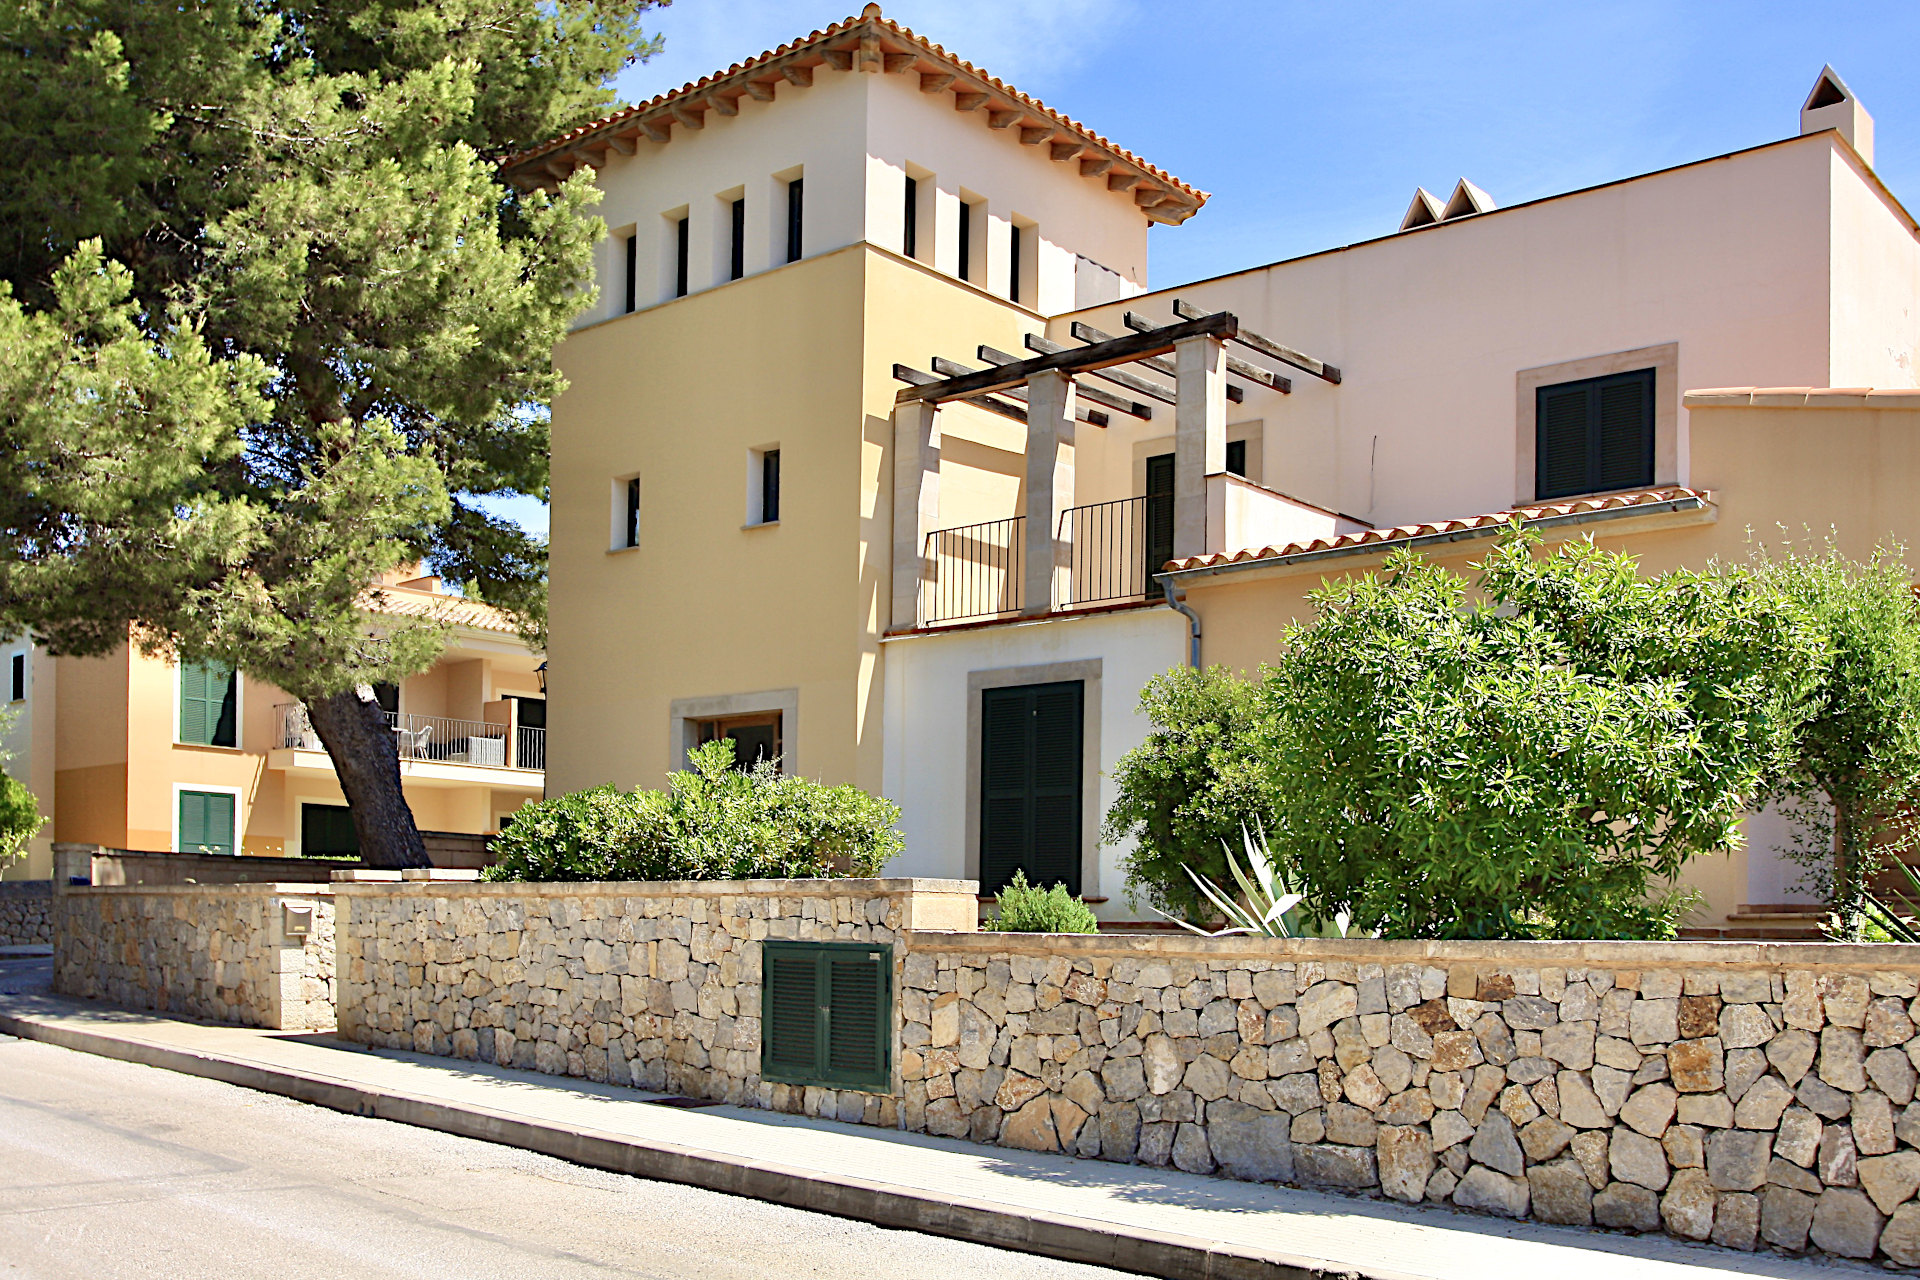 Sant Elm: großzügiges Apartment mit Terrassen, Garten und Meerblick in einer ruhigen Wohnanlage mit Pool